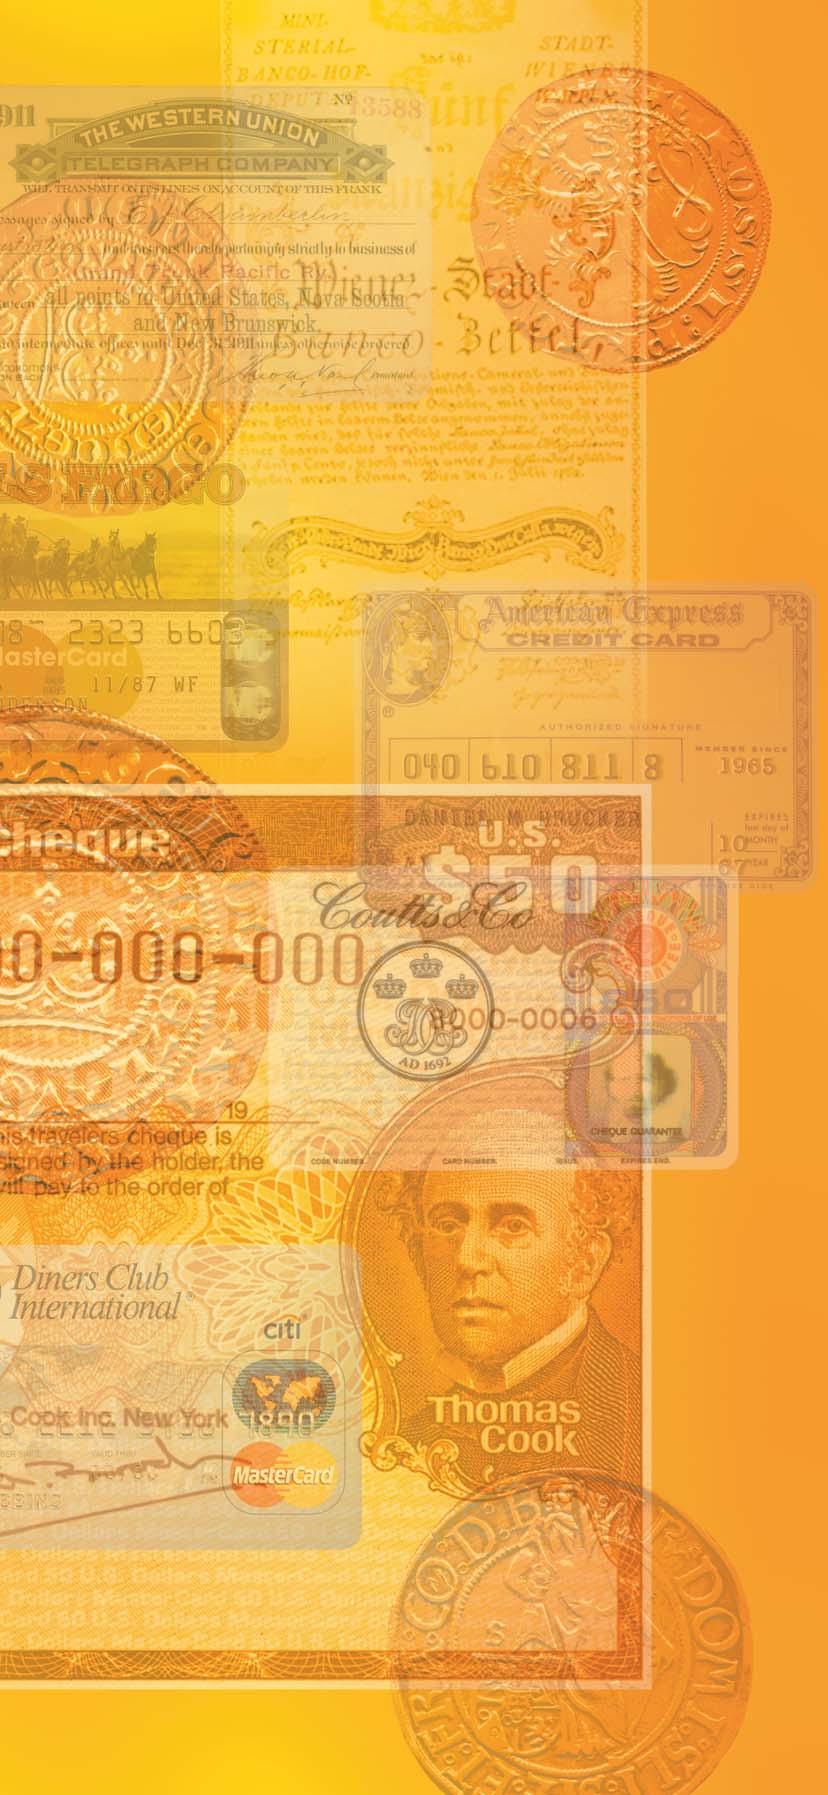 PRVNÍ KAPITOLA S rozvojem obchodu a cestování byly v 19. století vyvinuty cestovní šeky, poštovní poukázky, ale také předchůdci kreditních karet kovové úvěrové známky. Do začátku 2.